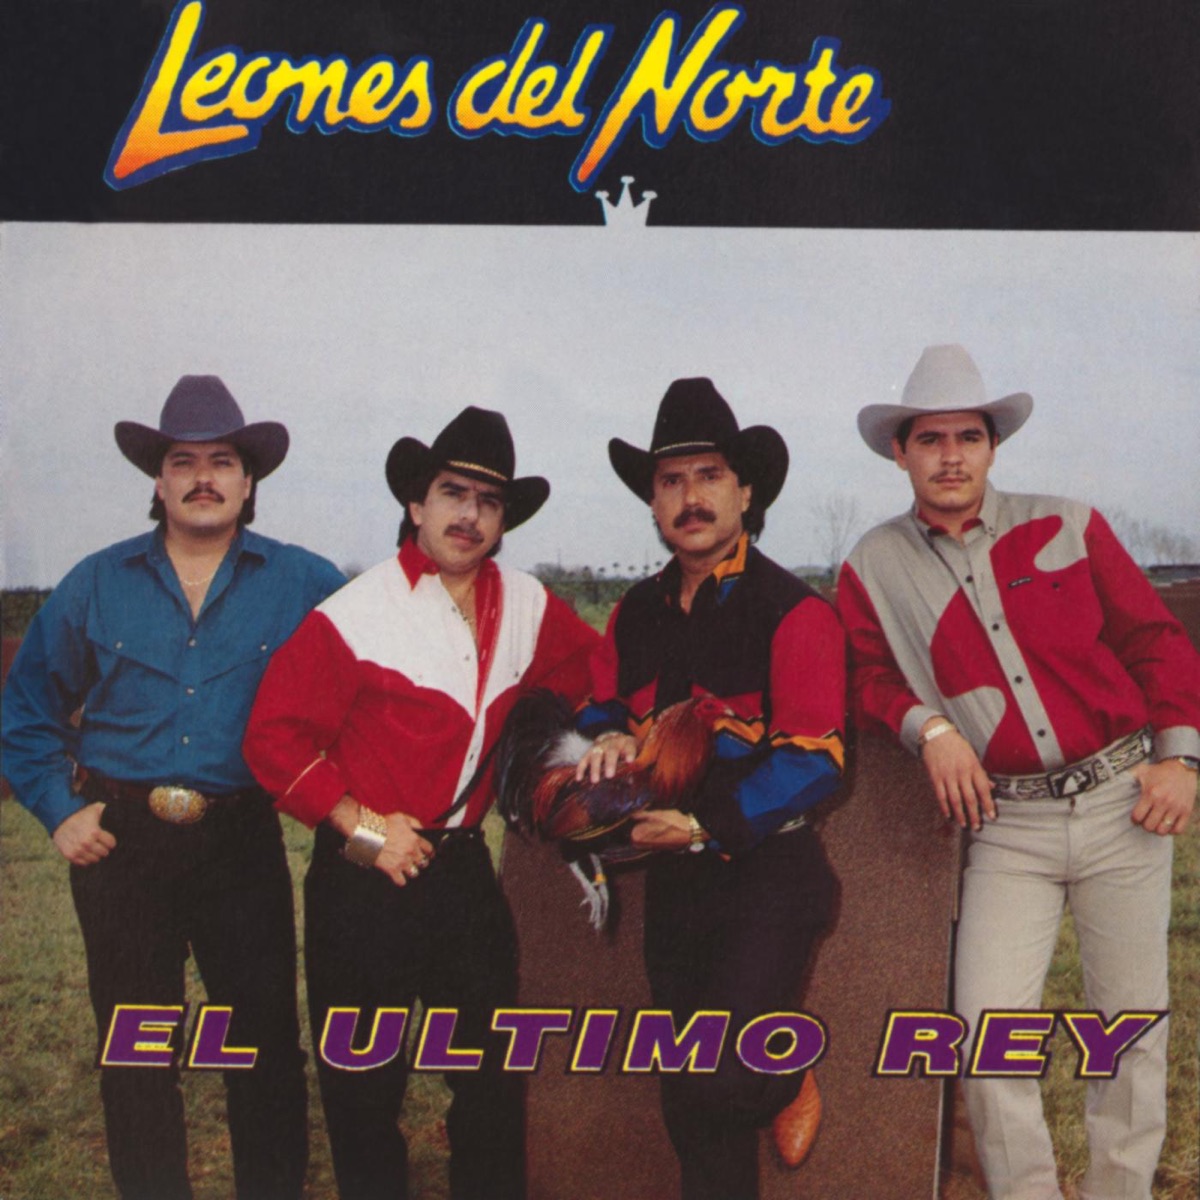 Corridos con Los Leones del Norte by Los Leones del Norte on Apple Music